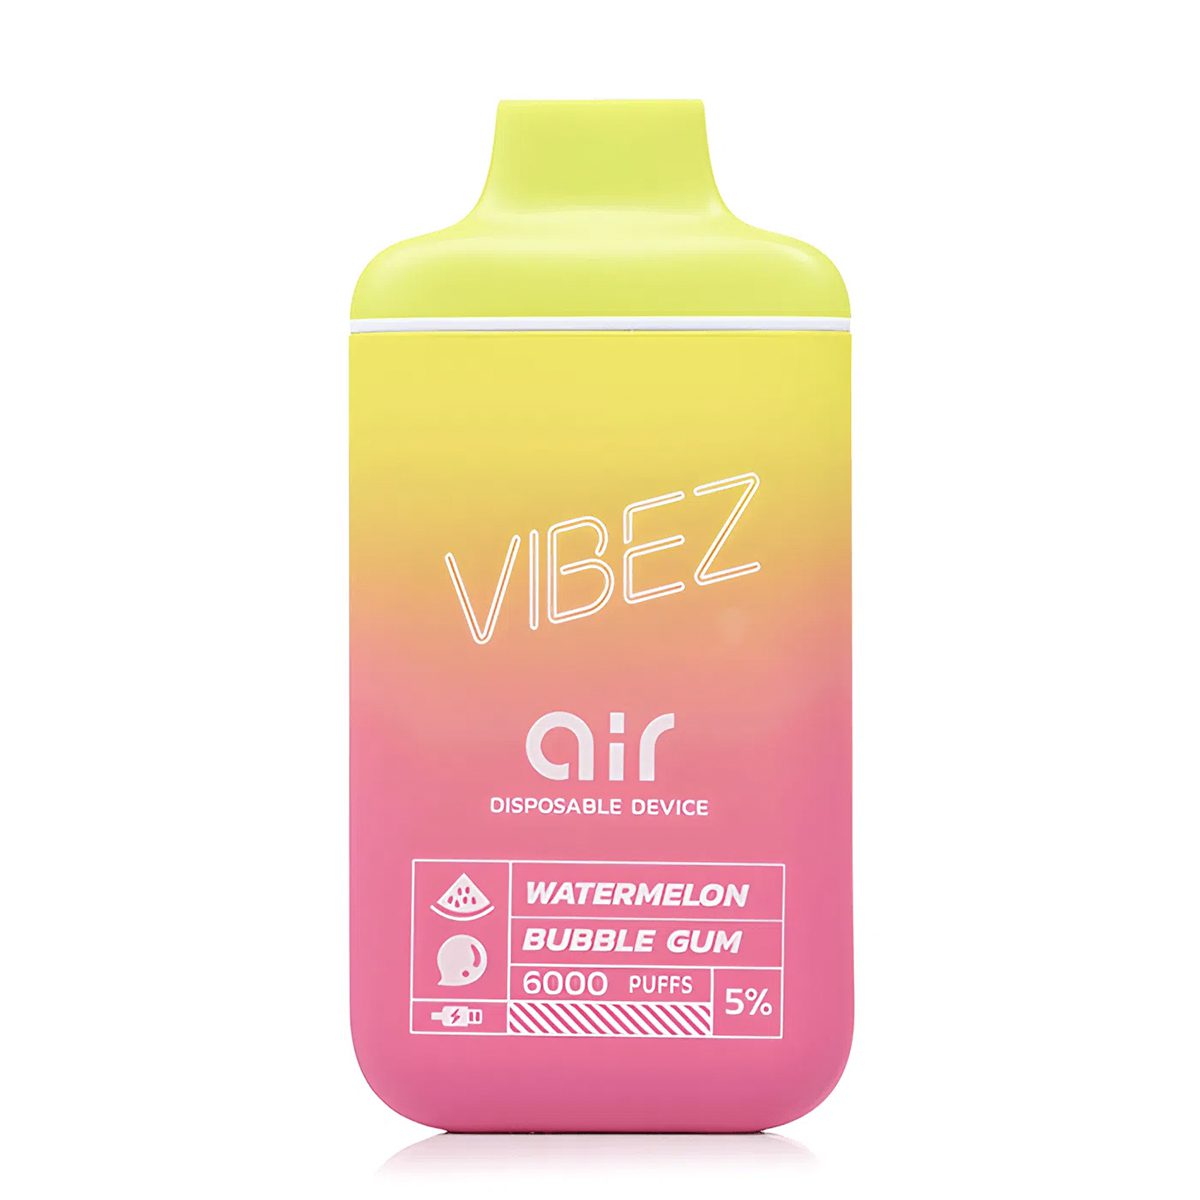 VIBEZ AIR Watermelon Bubble Gum (5% Nic)